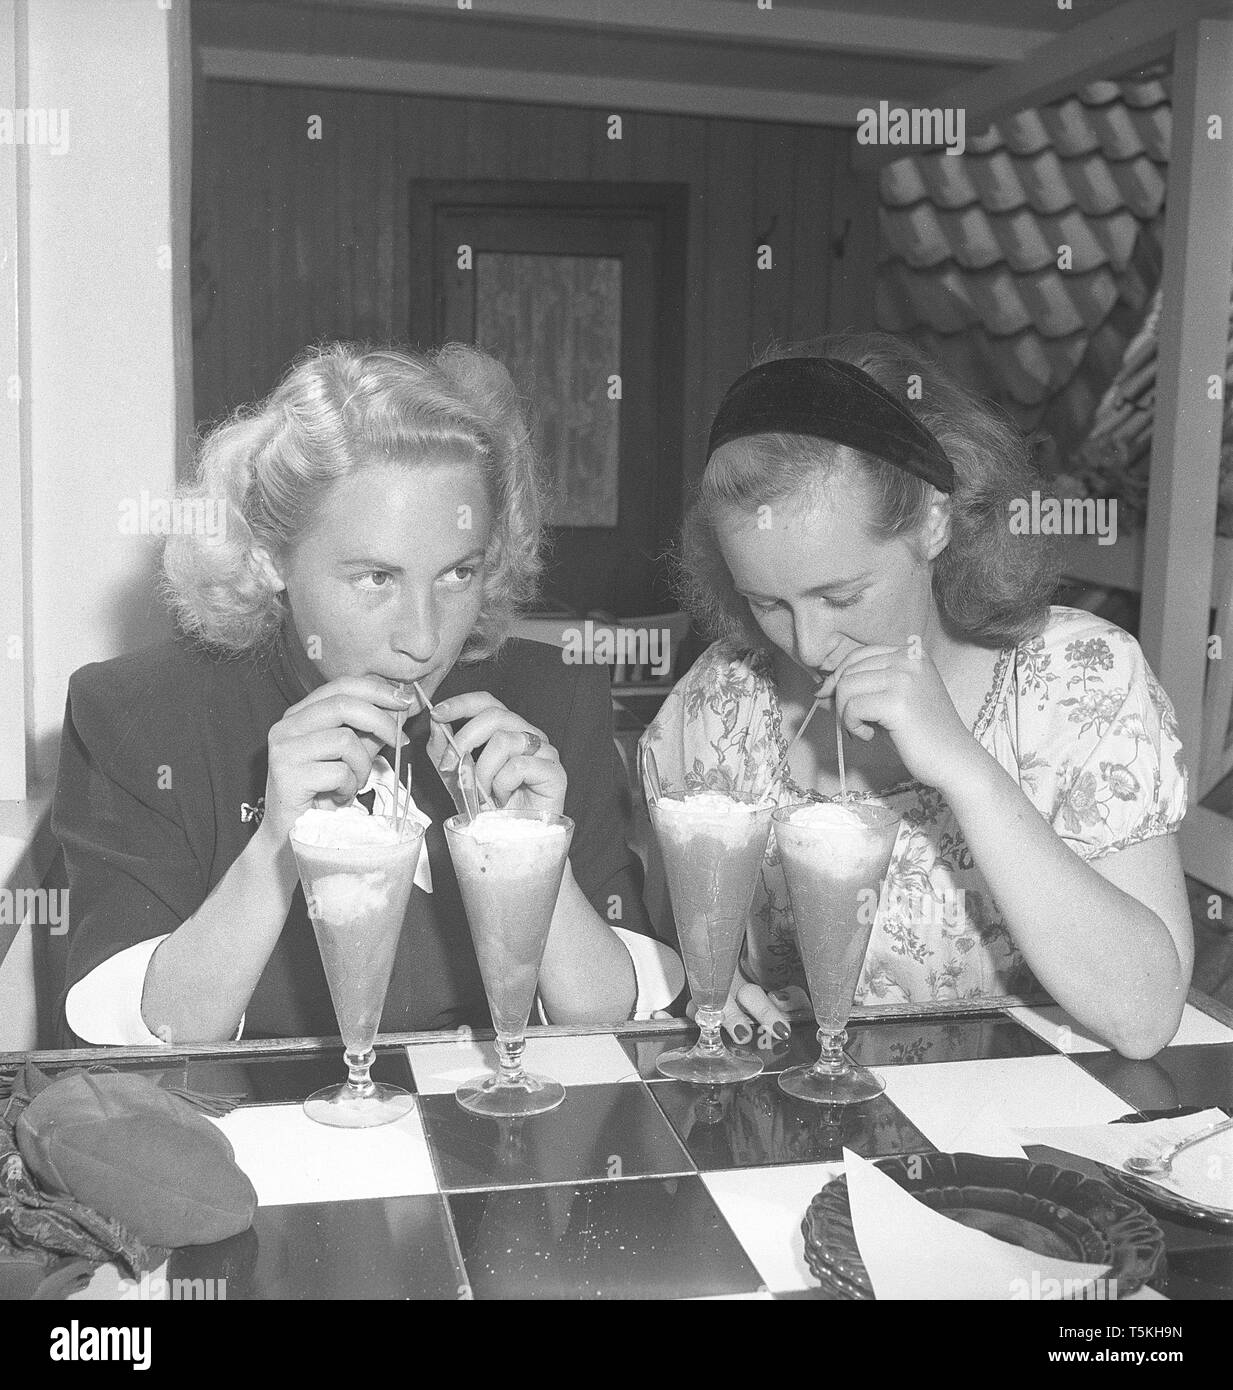 1940s'attrice. Un bicchiere di dessert drink non è sufficiente. Questi due giovani donne hanno due bicchieri ciascuno e bevande da loro con cannucce. Foto Kristoffersson ref U115-1. La Svezia 1946 Foto Stock